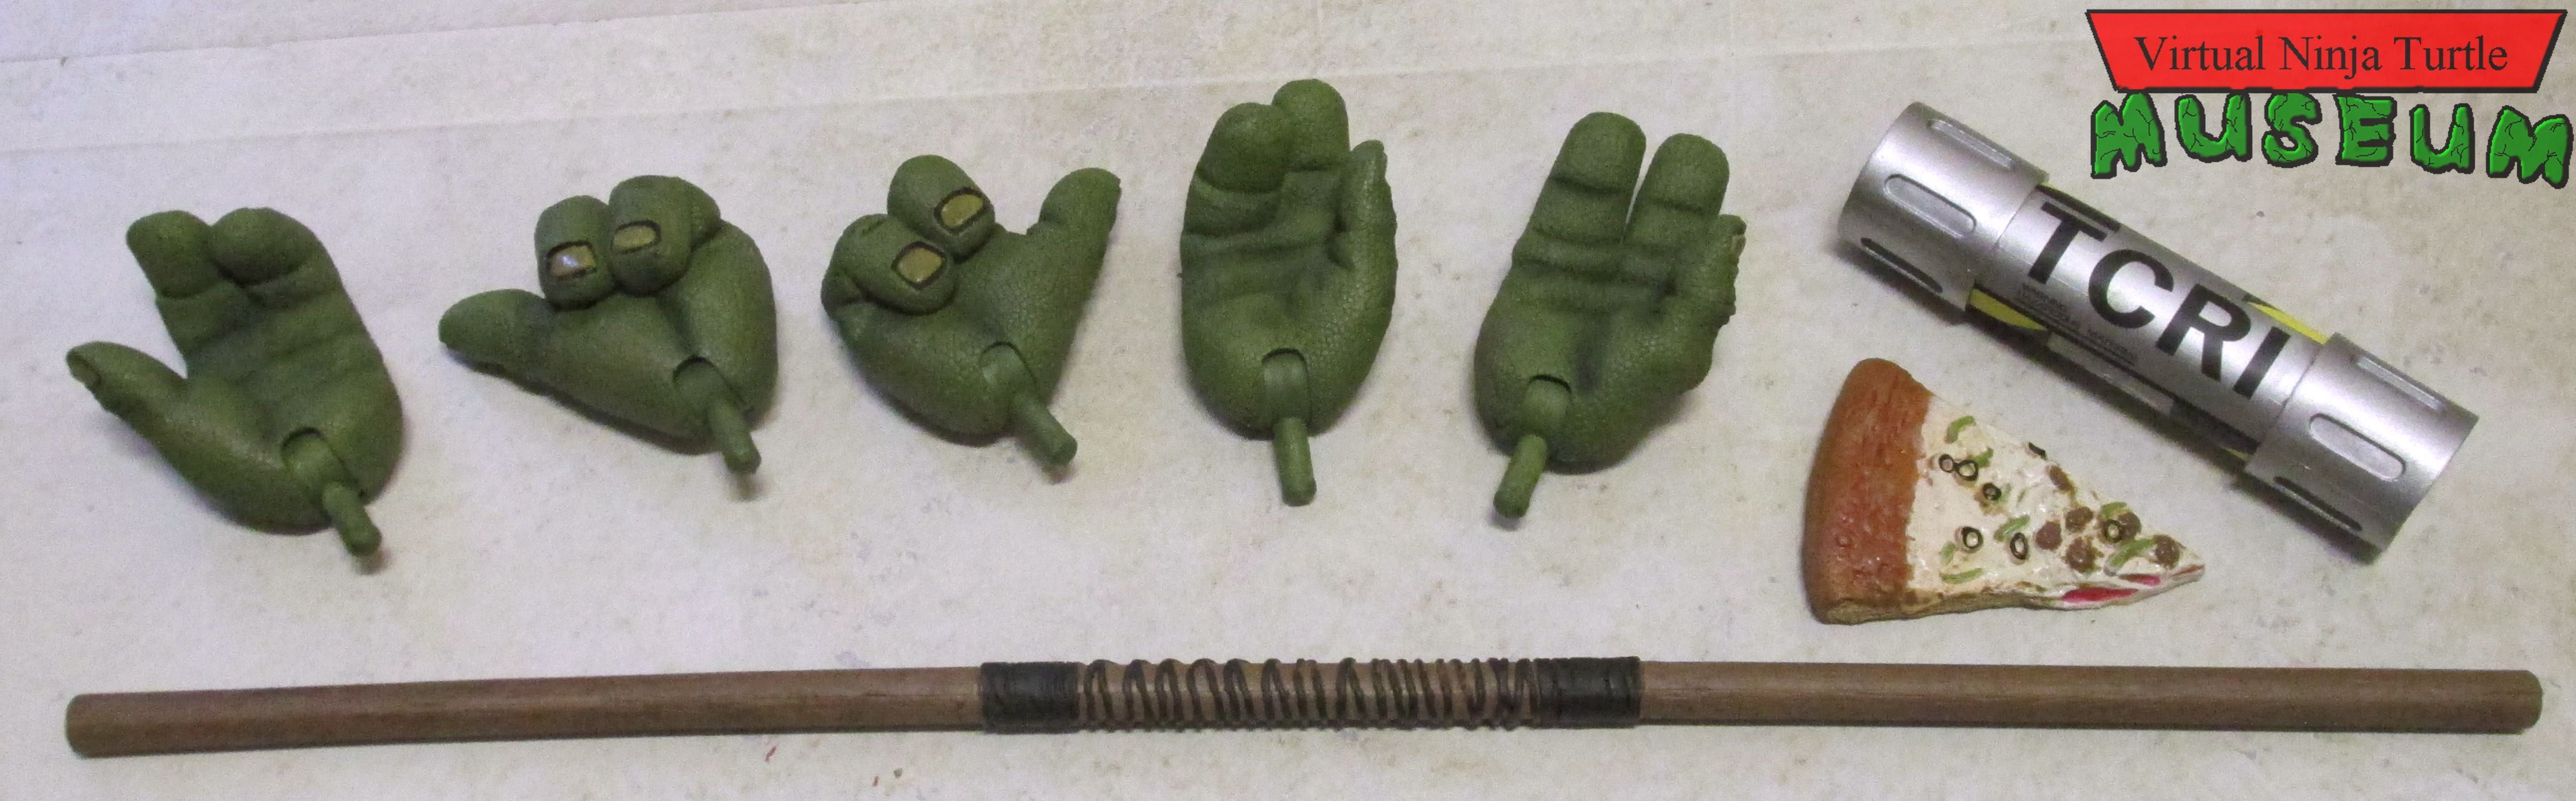 Donatello's accessories